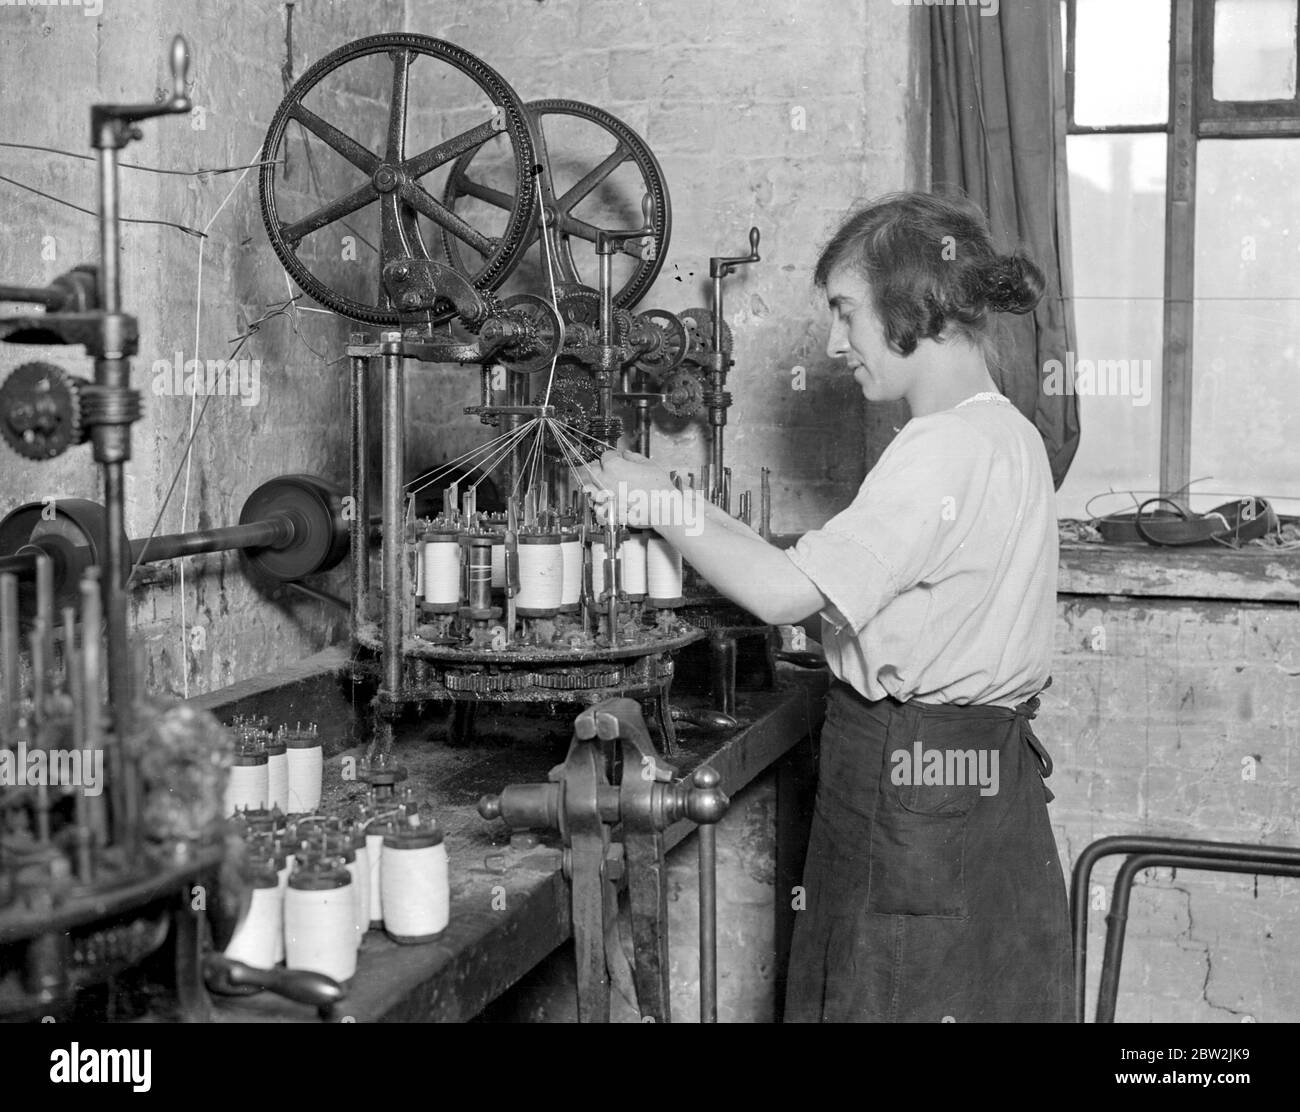 Fabrication de dentelle à messrs William Bridgett and Sons Ltd, Lenton, Nottingham. Une machine pour faire une chaîne spéciale utilisée dans l'industrie. 1923 Banque D'Images